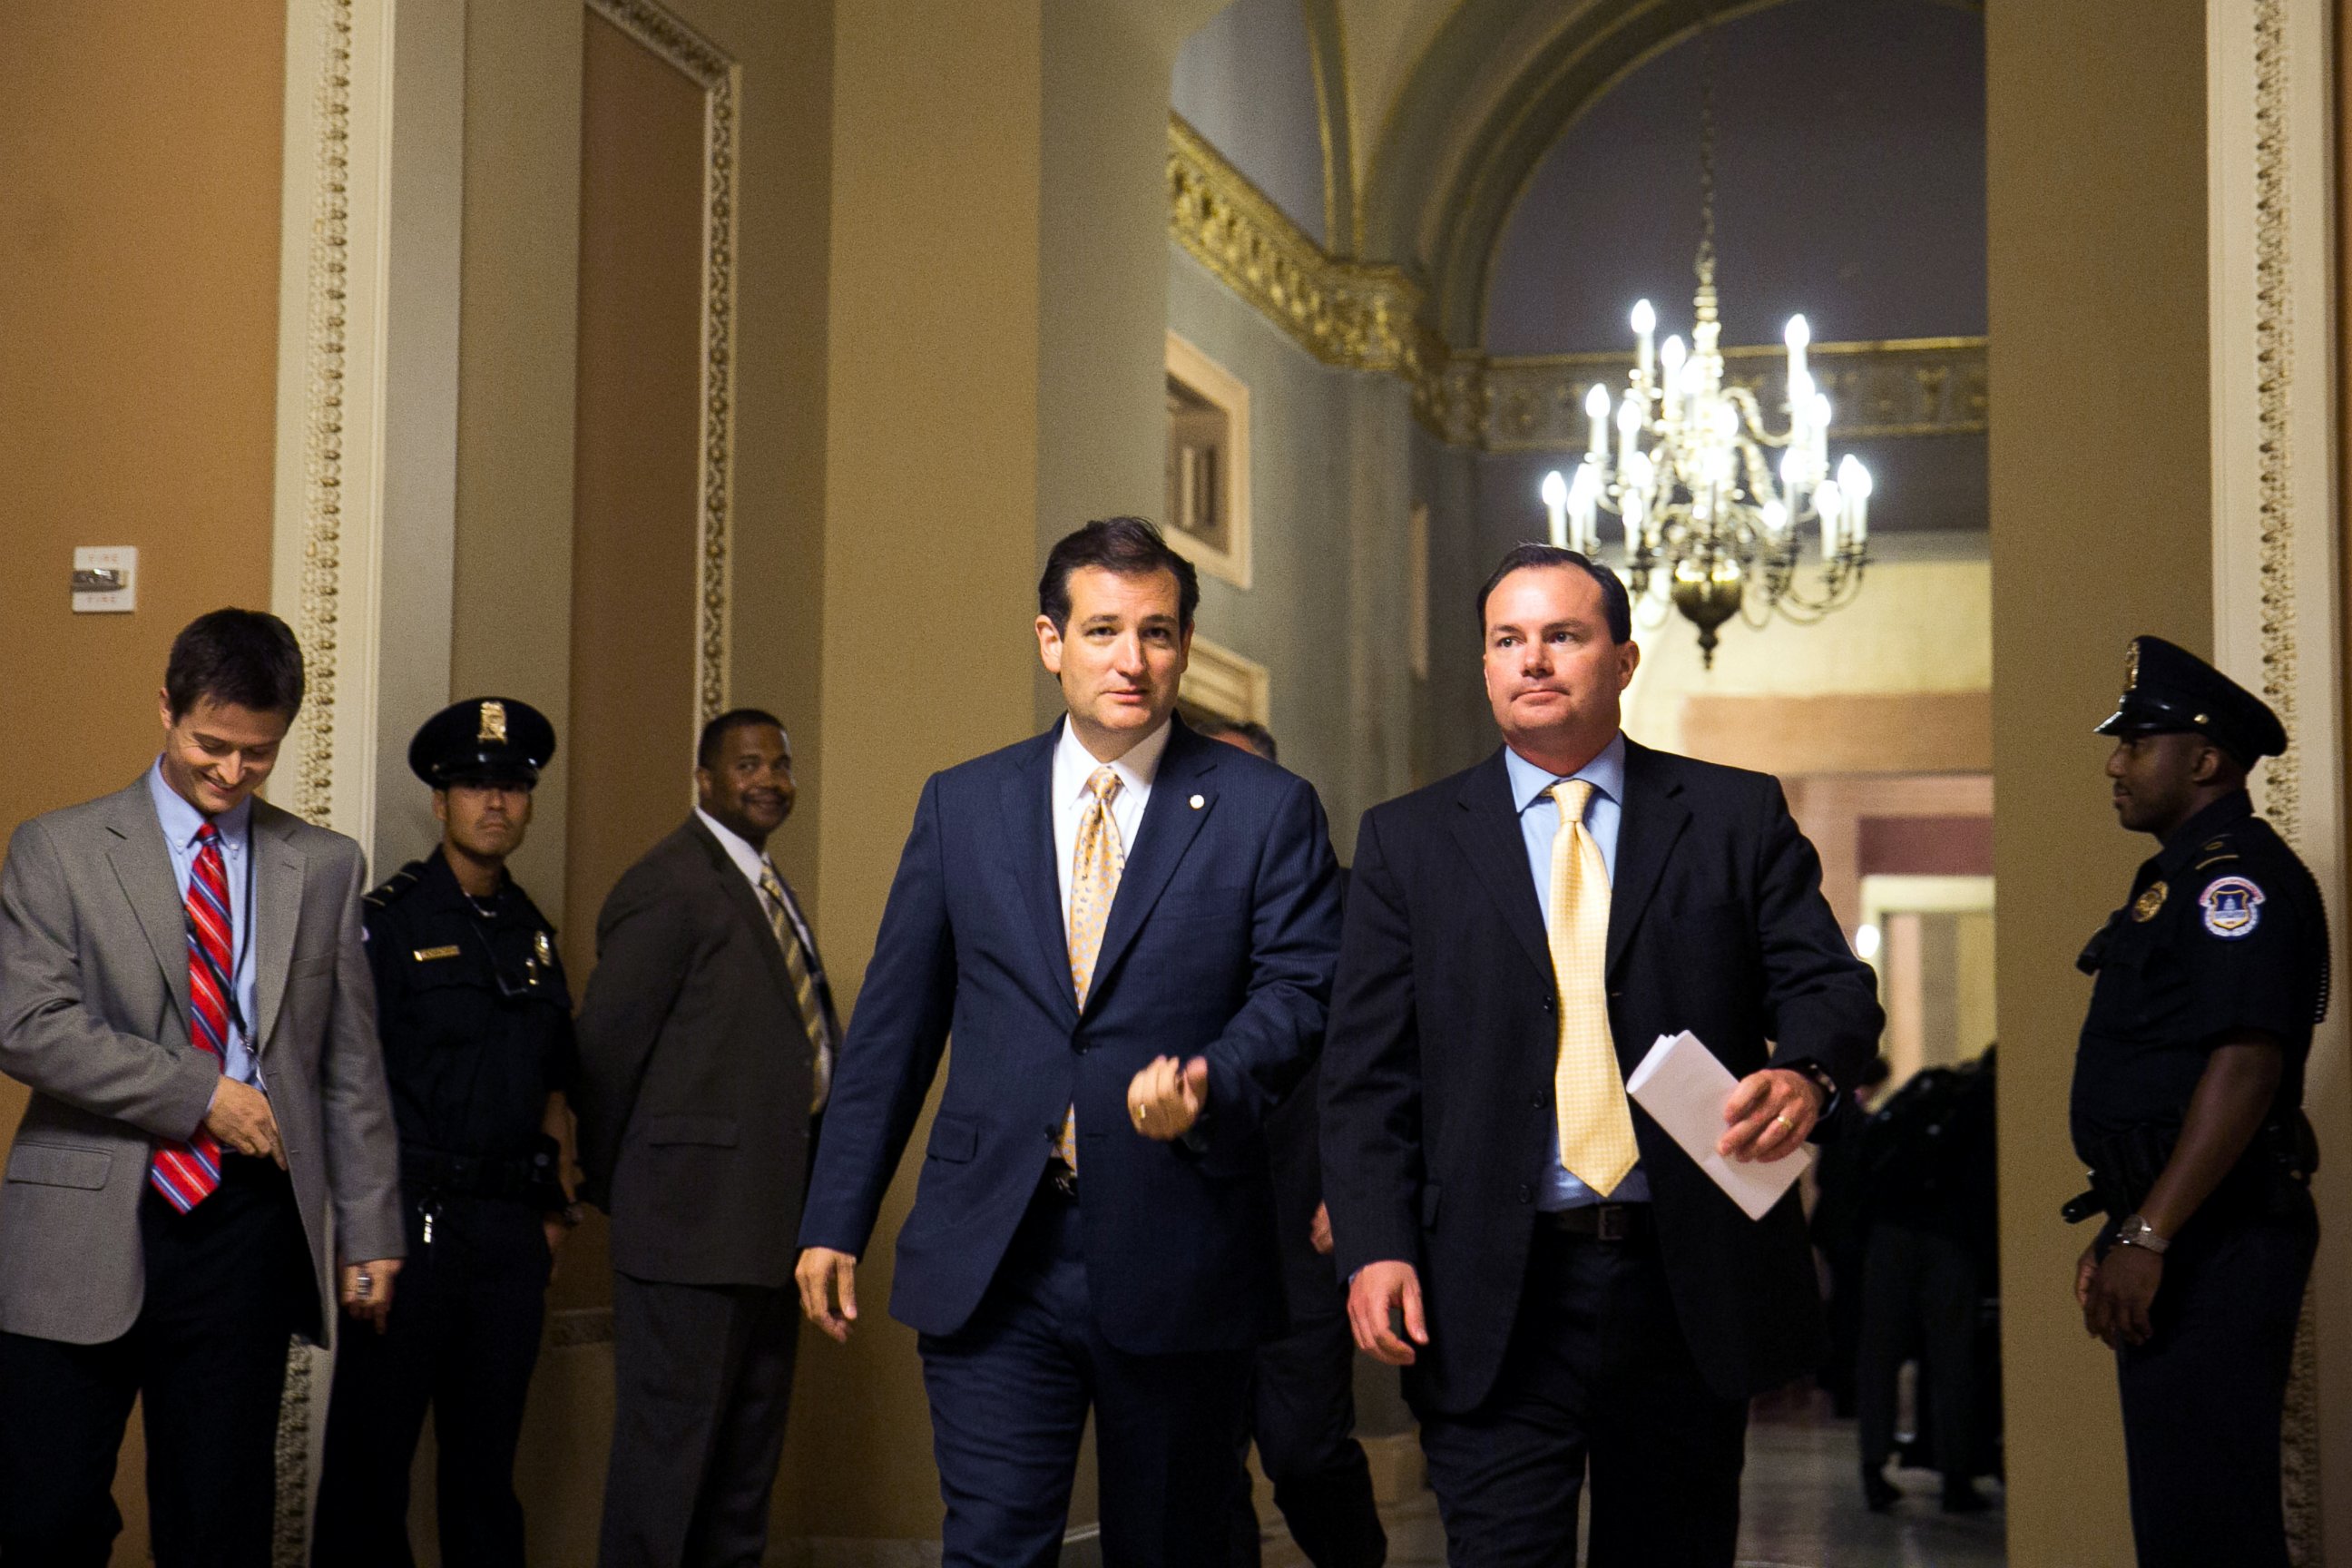 PHOTO: Sen. Ted Cruz, left, and Sen. Mike Lee walk together